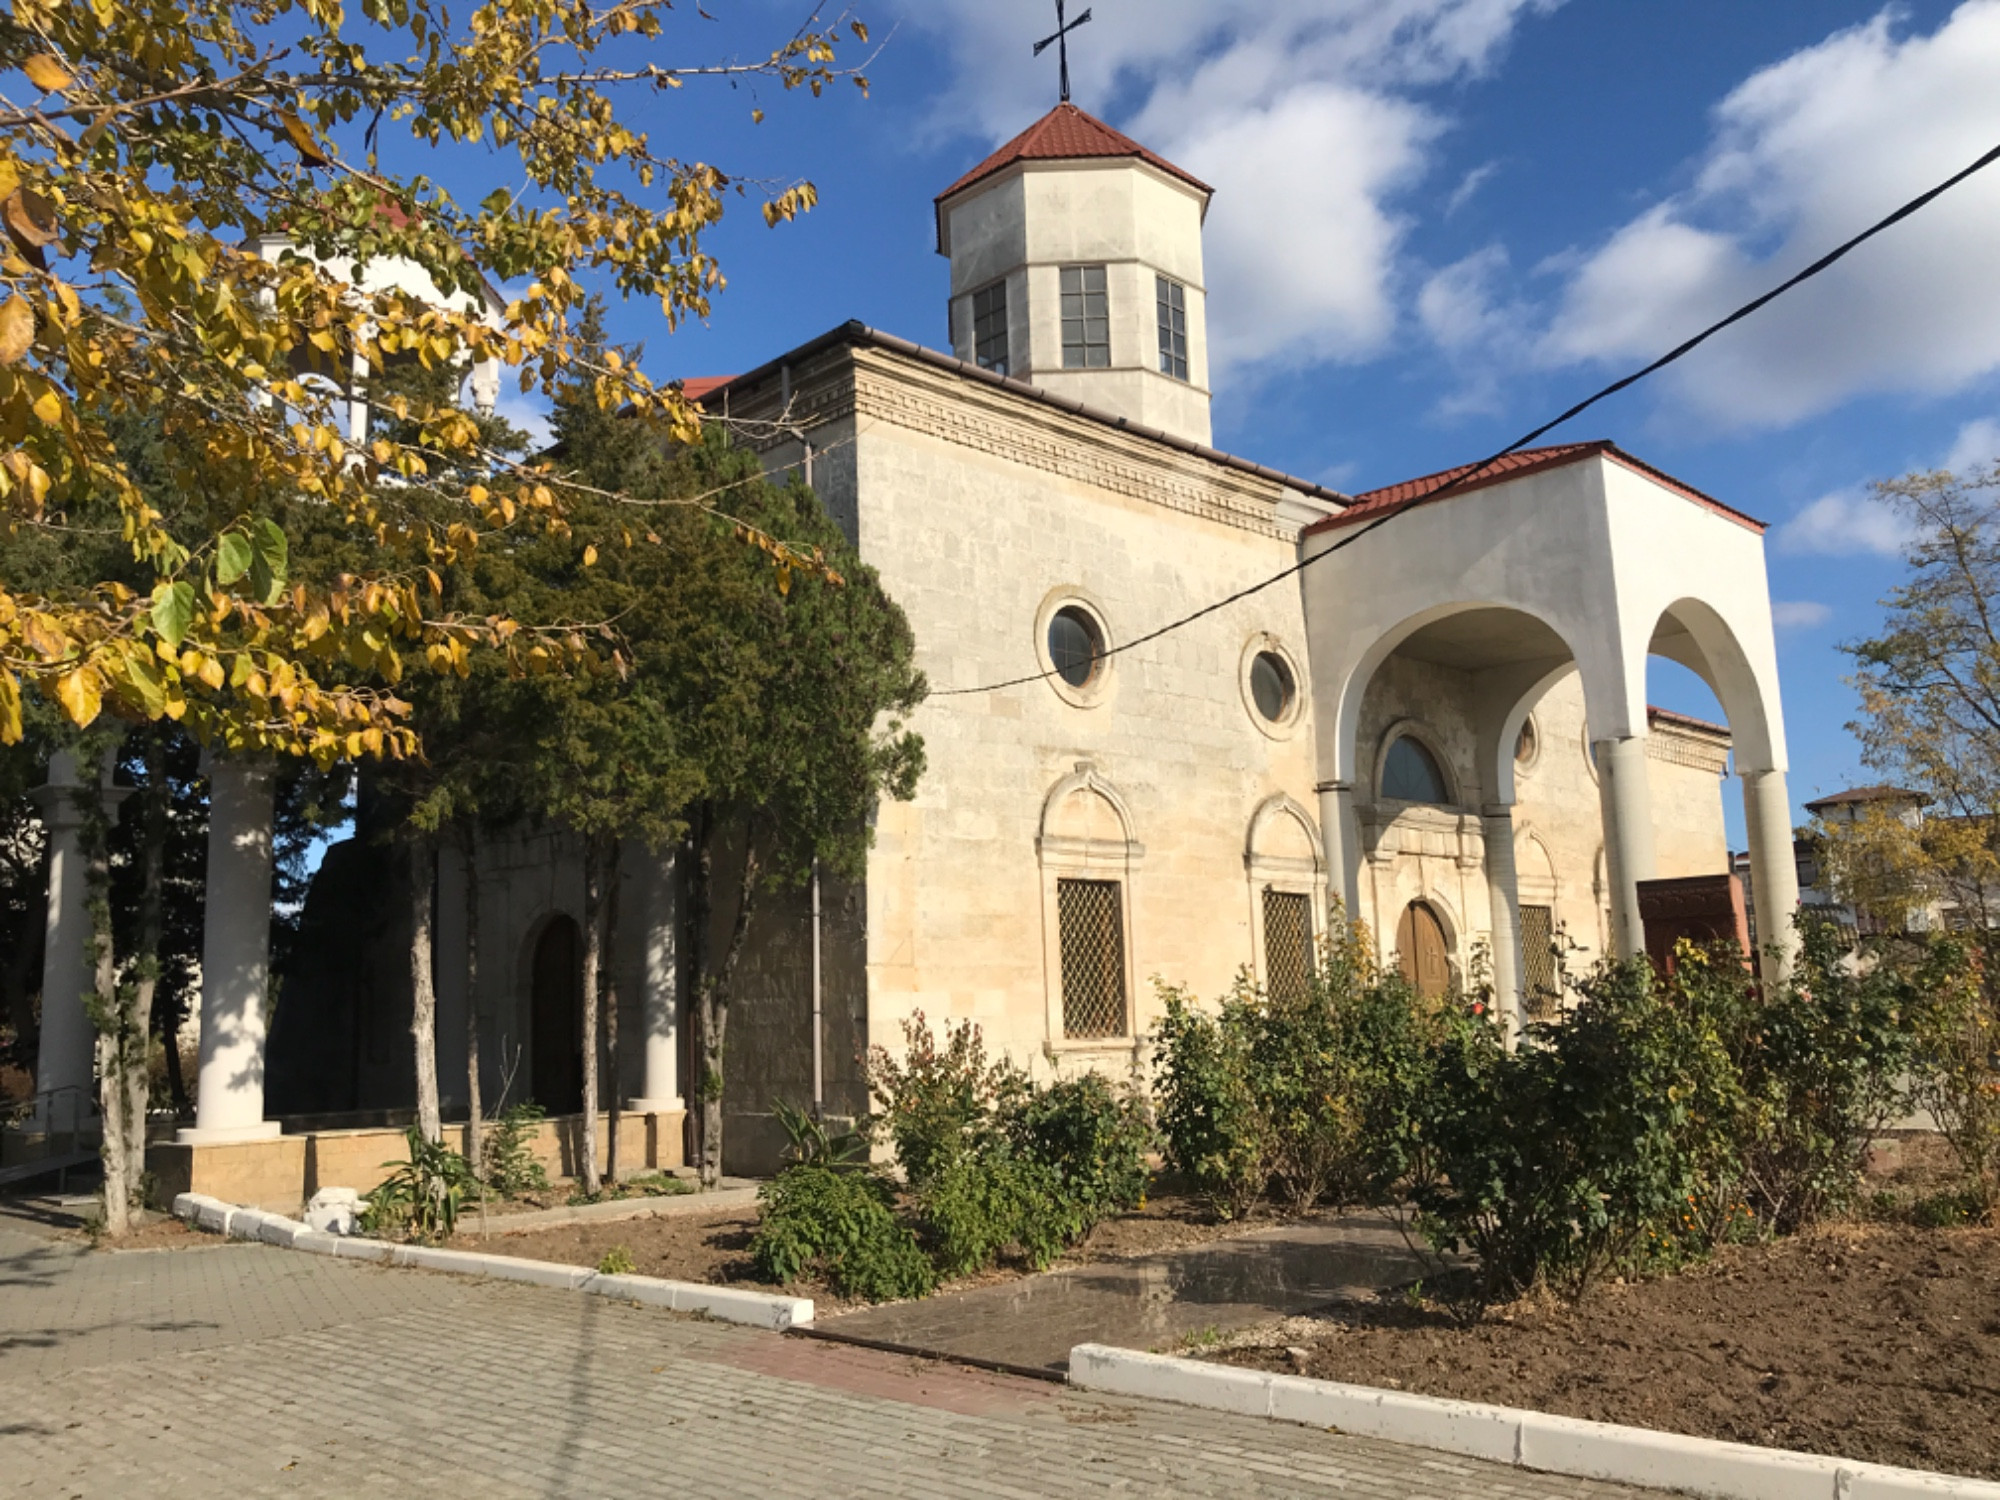 Армянская апостольская Церковь Сурб-Никогайос<br/>
